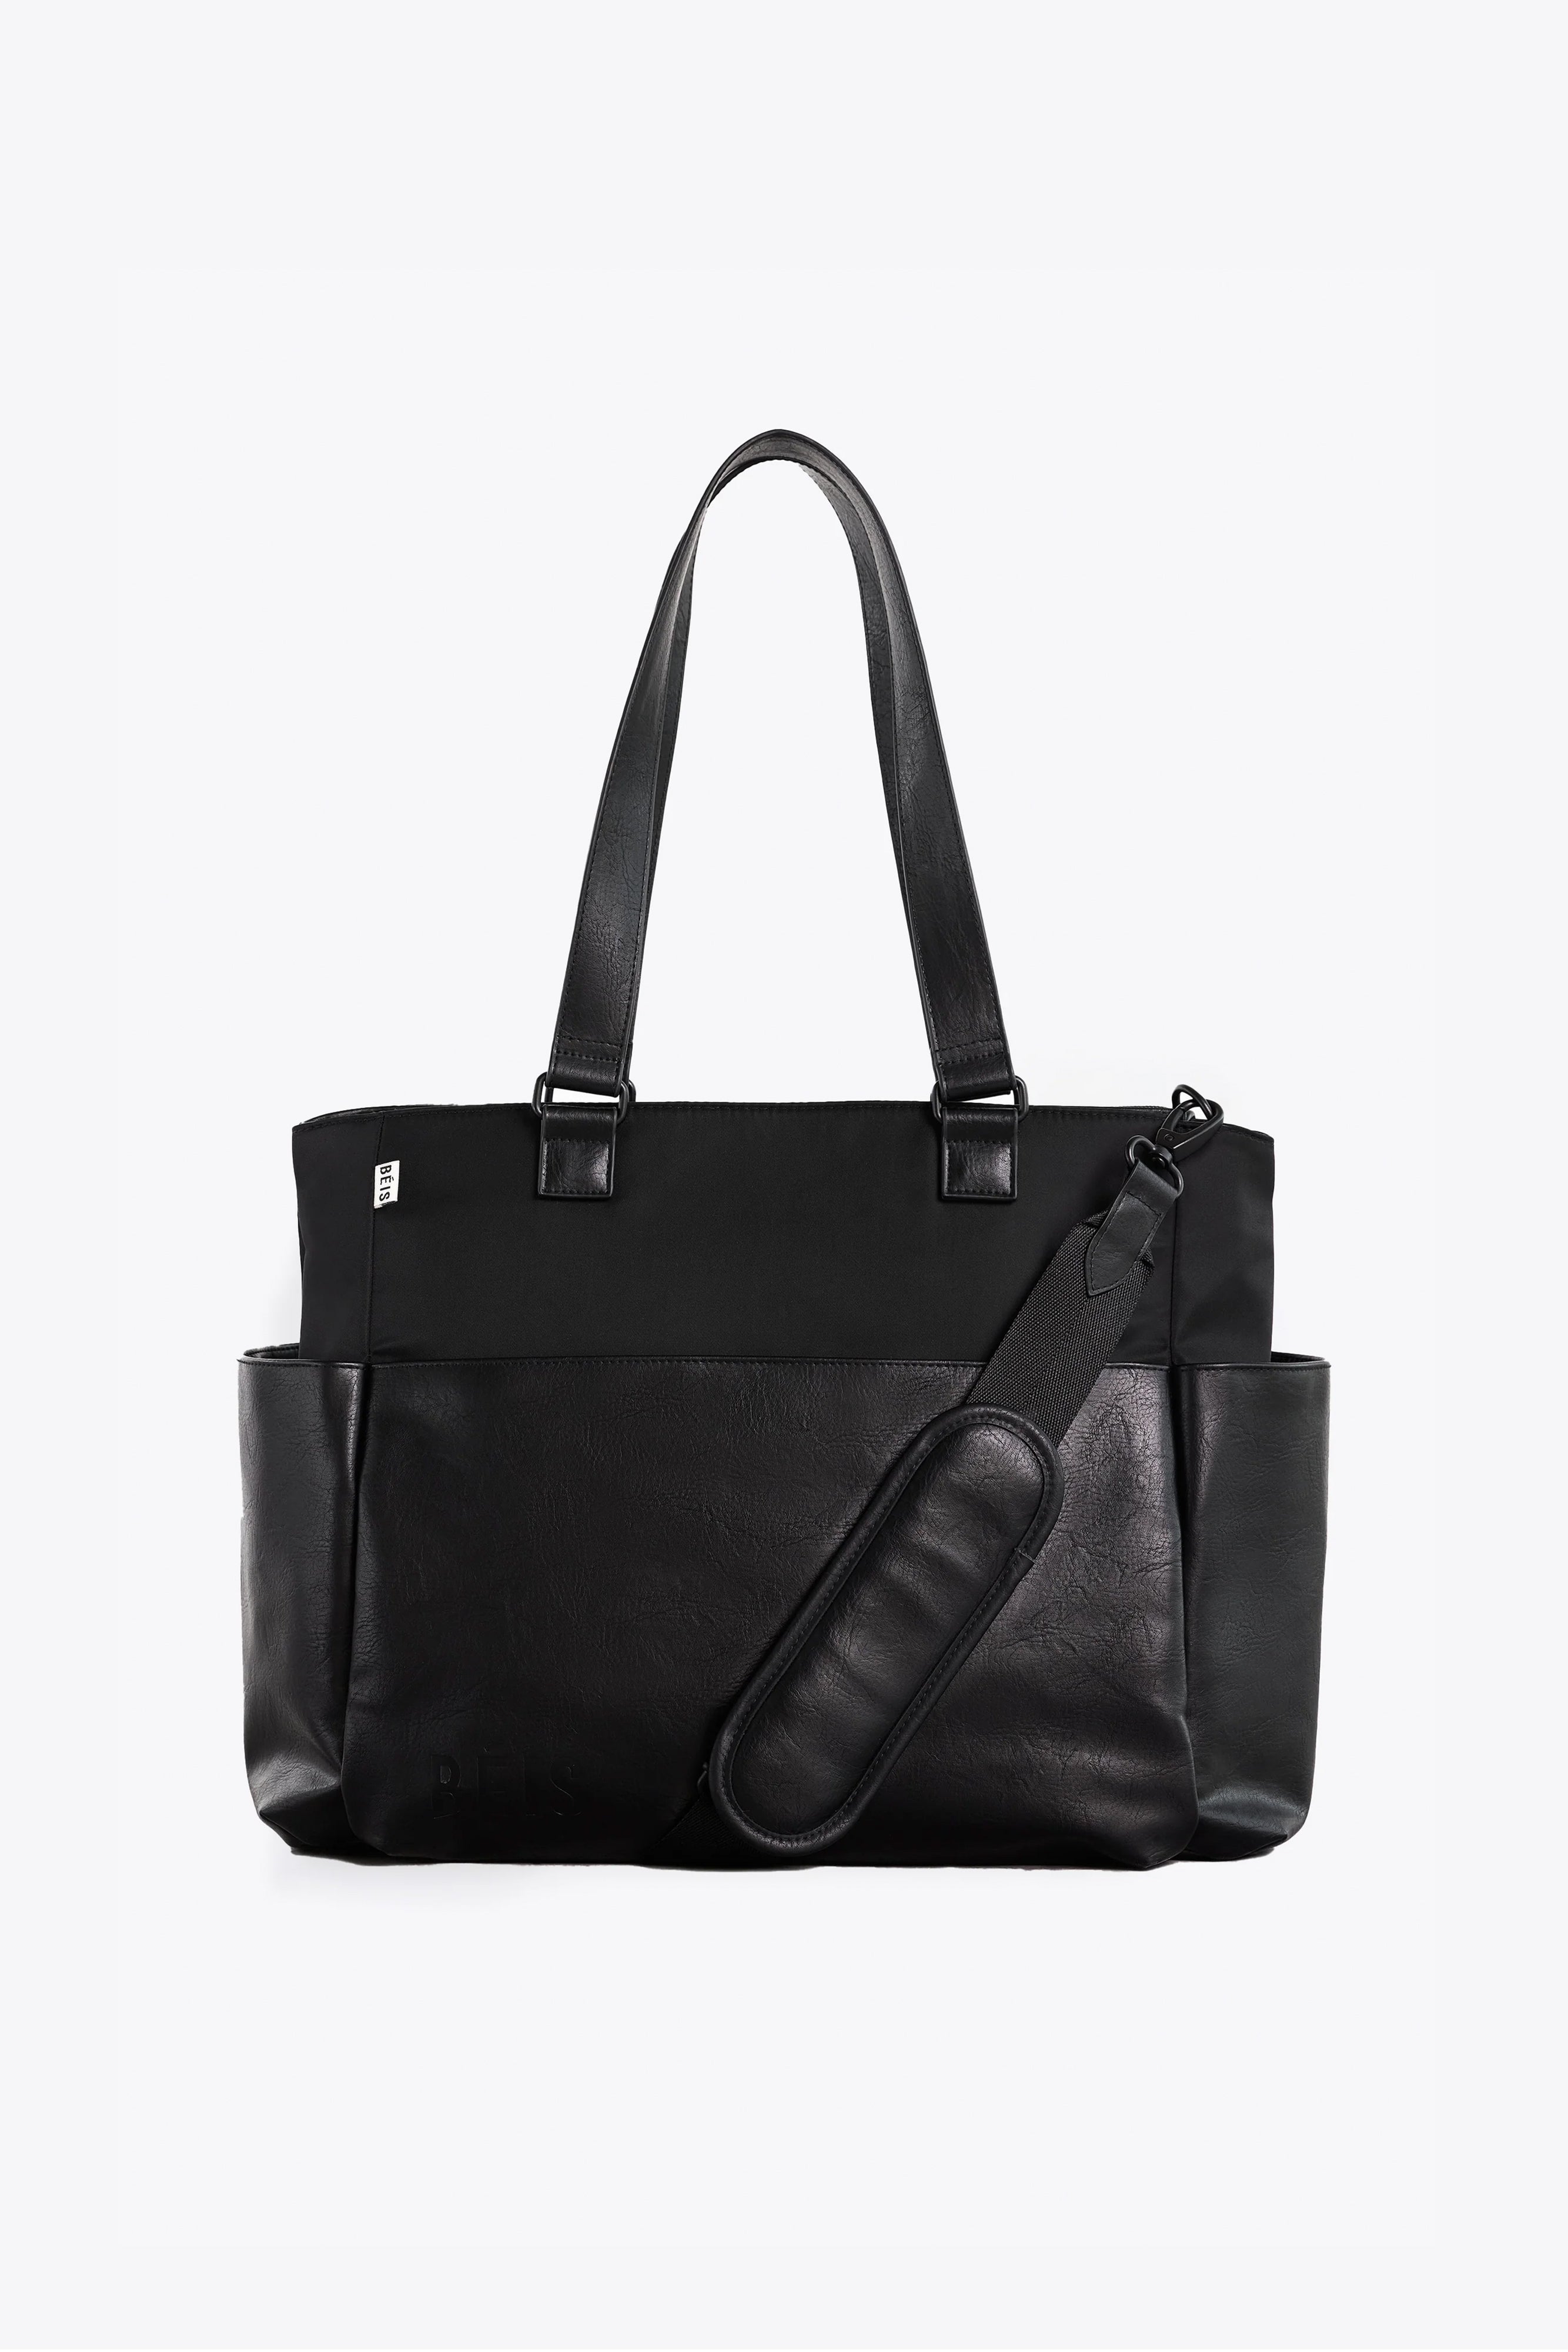 BÉIS 'The Diaper Bag' in Black - Baby Bag & Diaper Tote Bag in Black